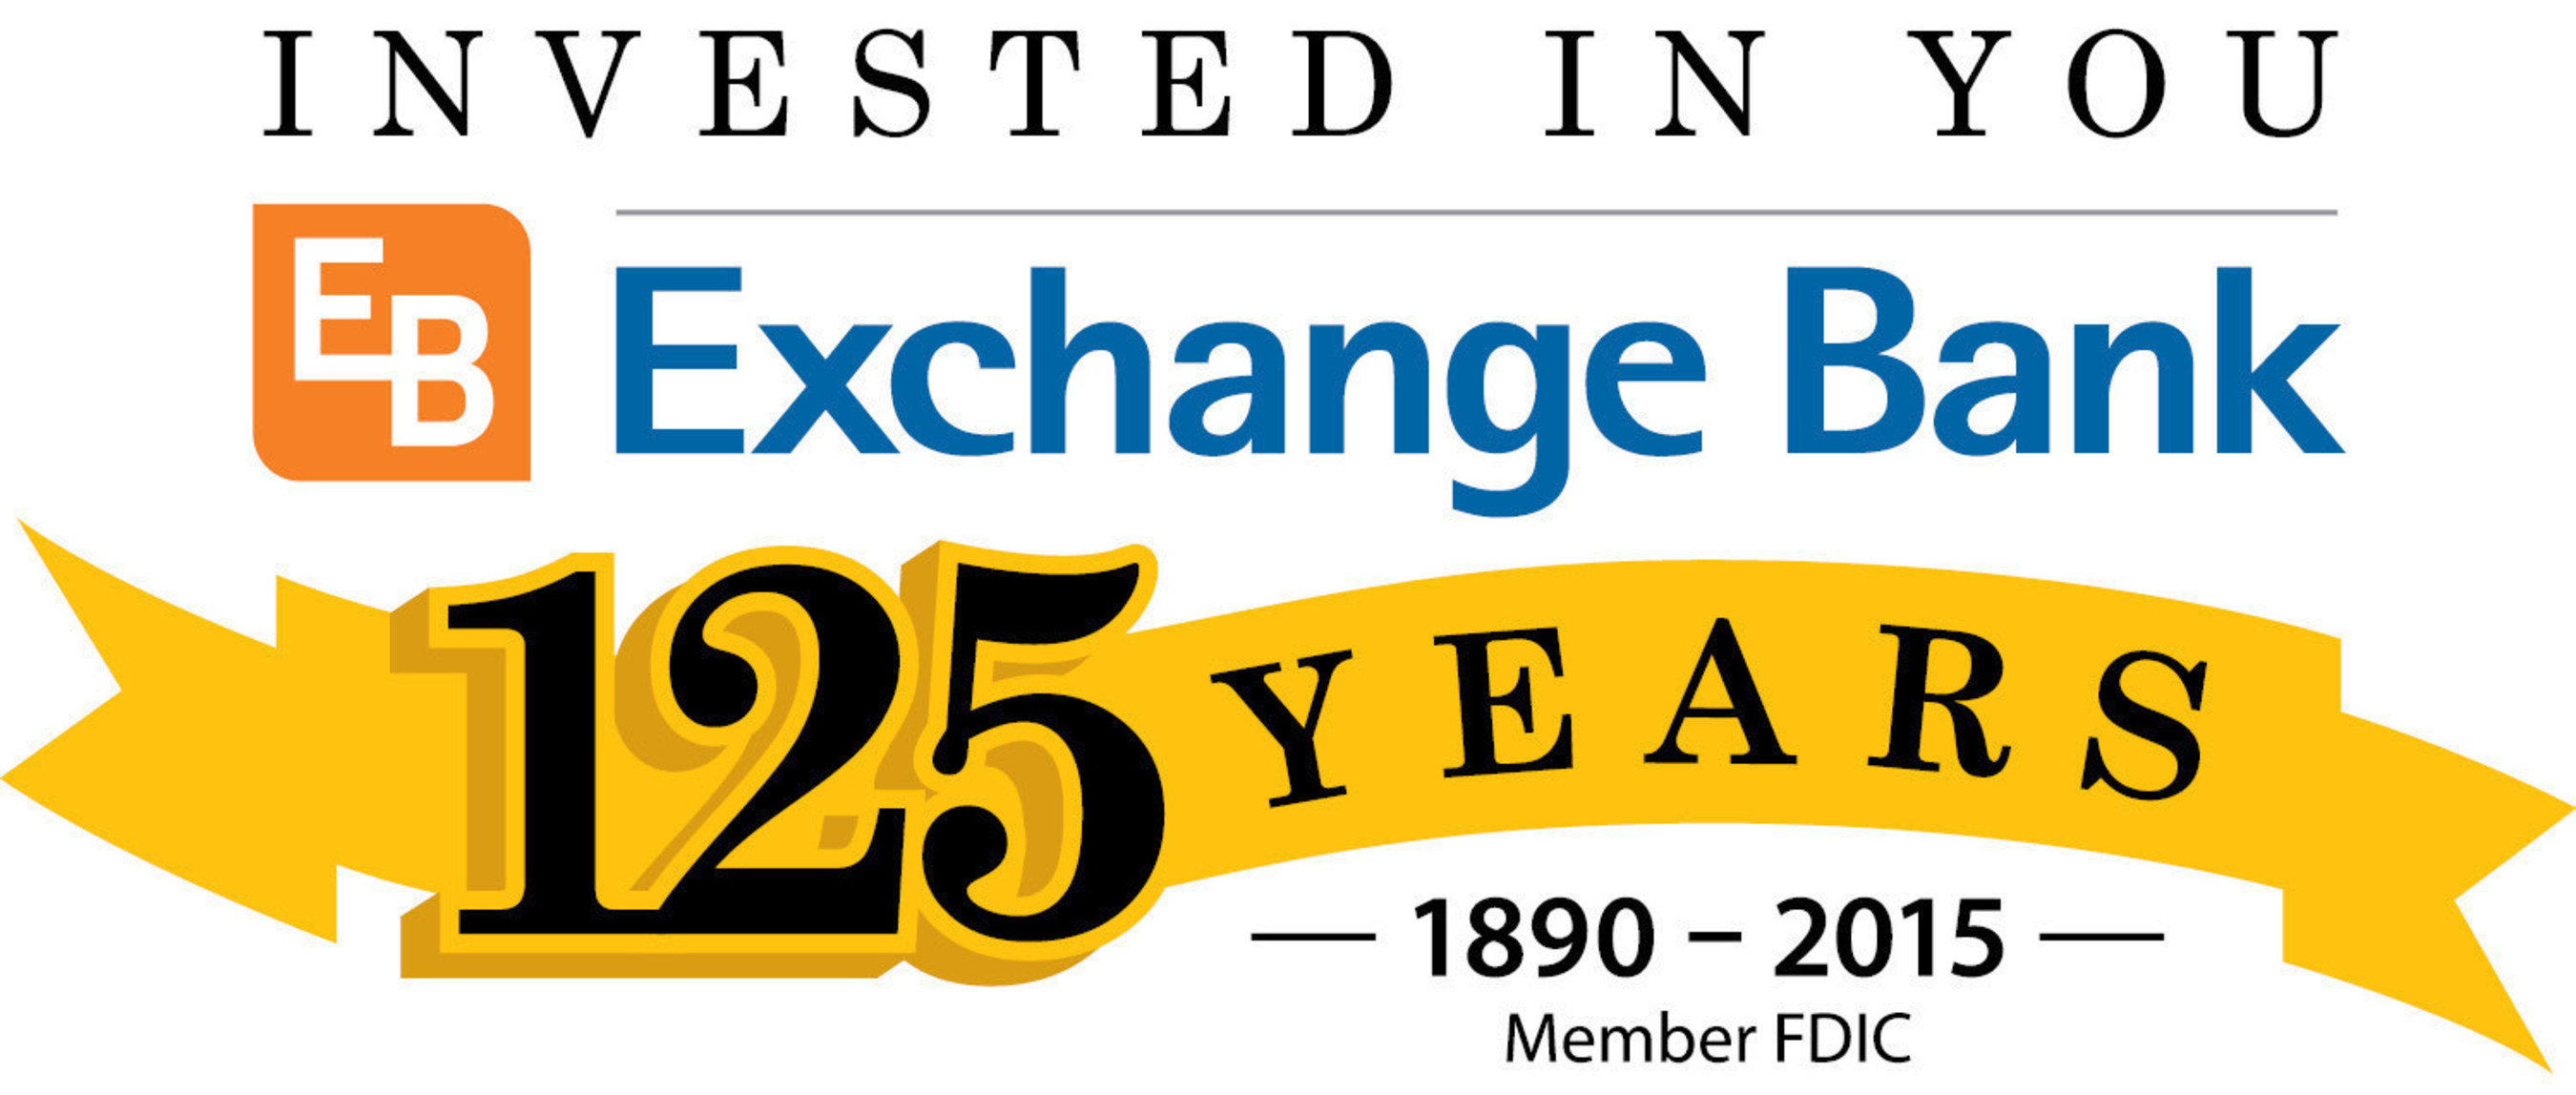 Exchange Bank celebrates 125 year Anniversary - May 1, 2015 - Santa Rosa, CA.